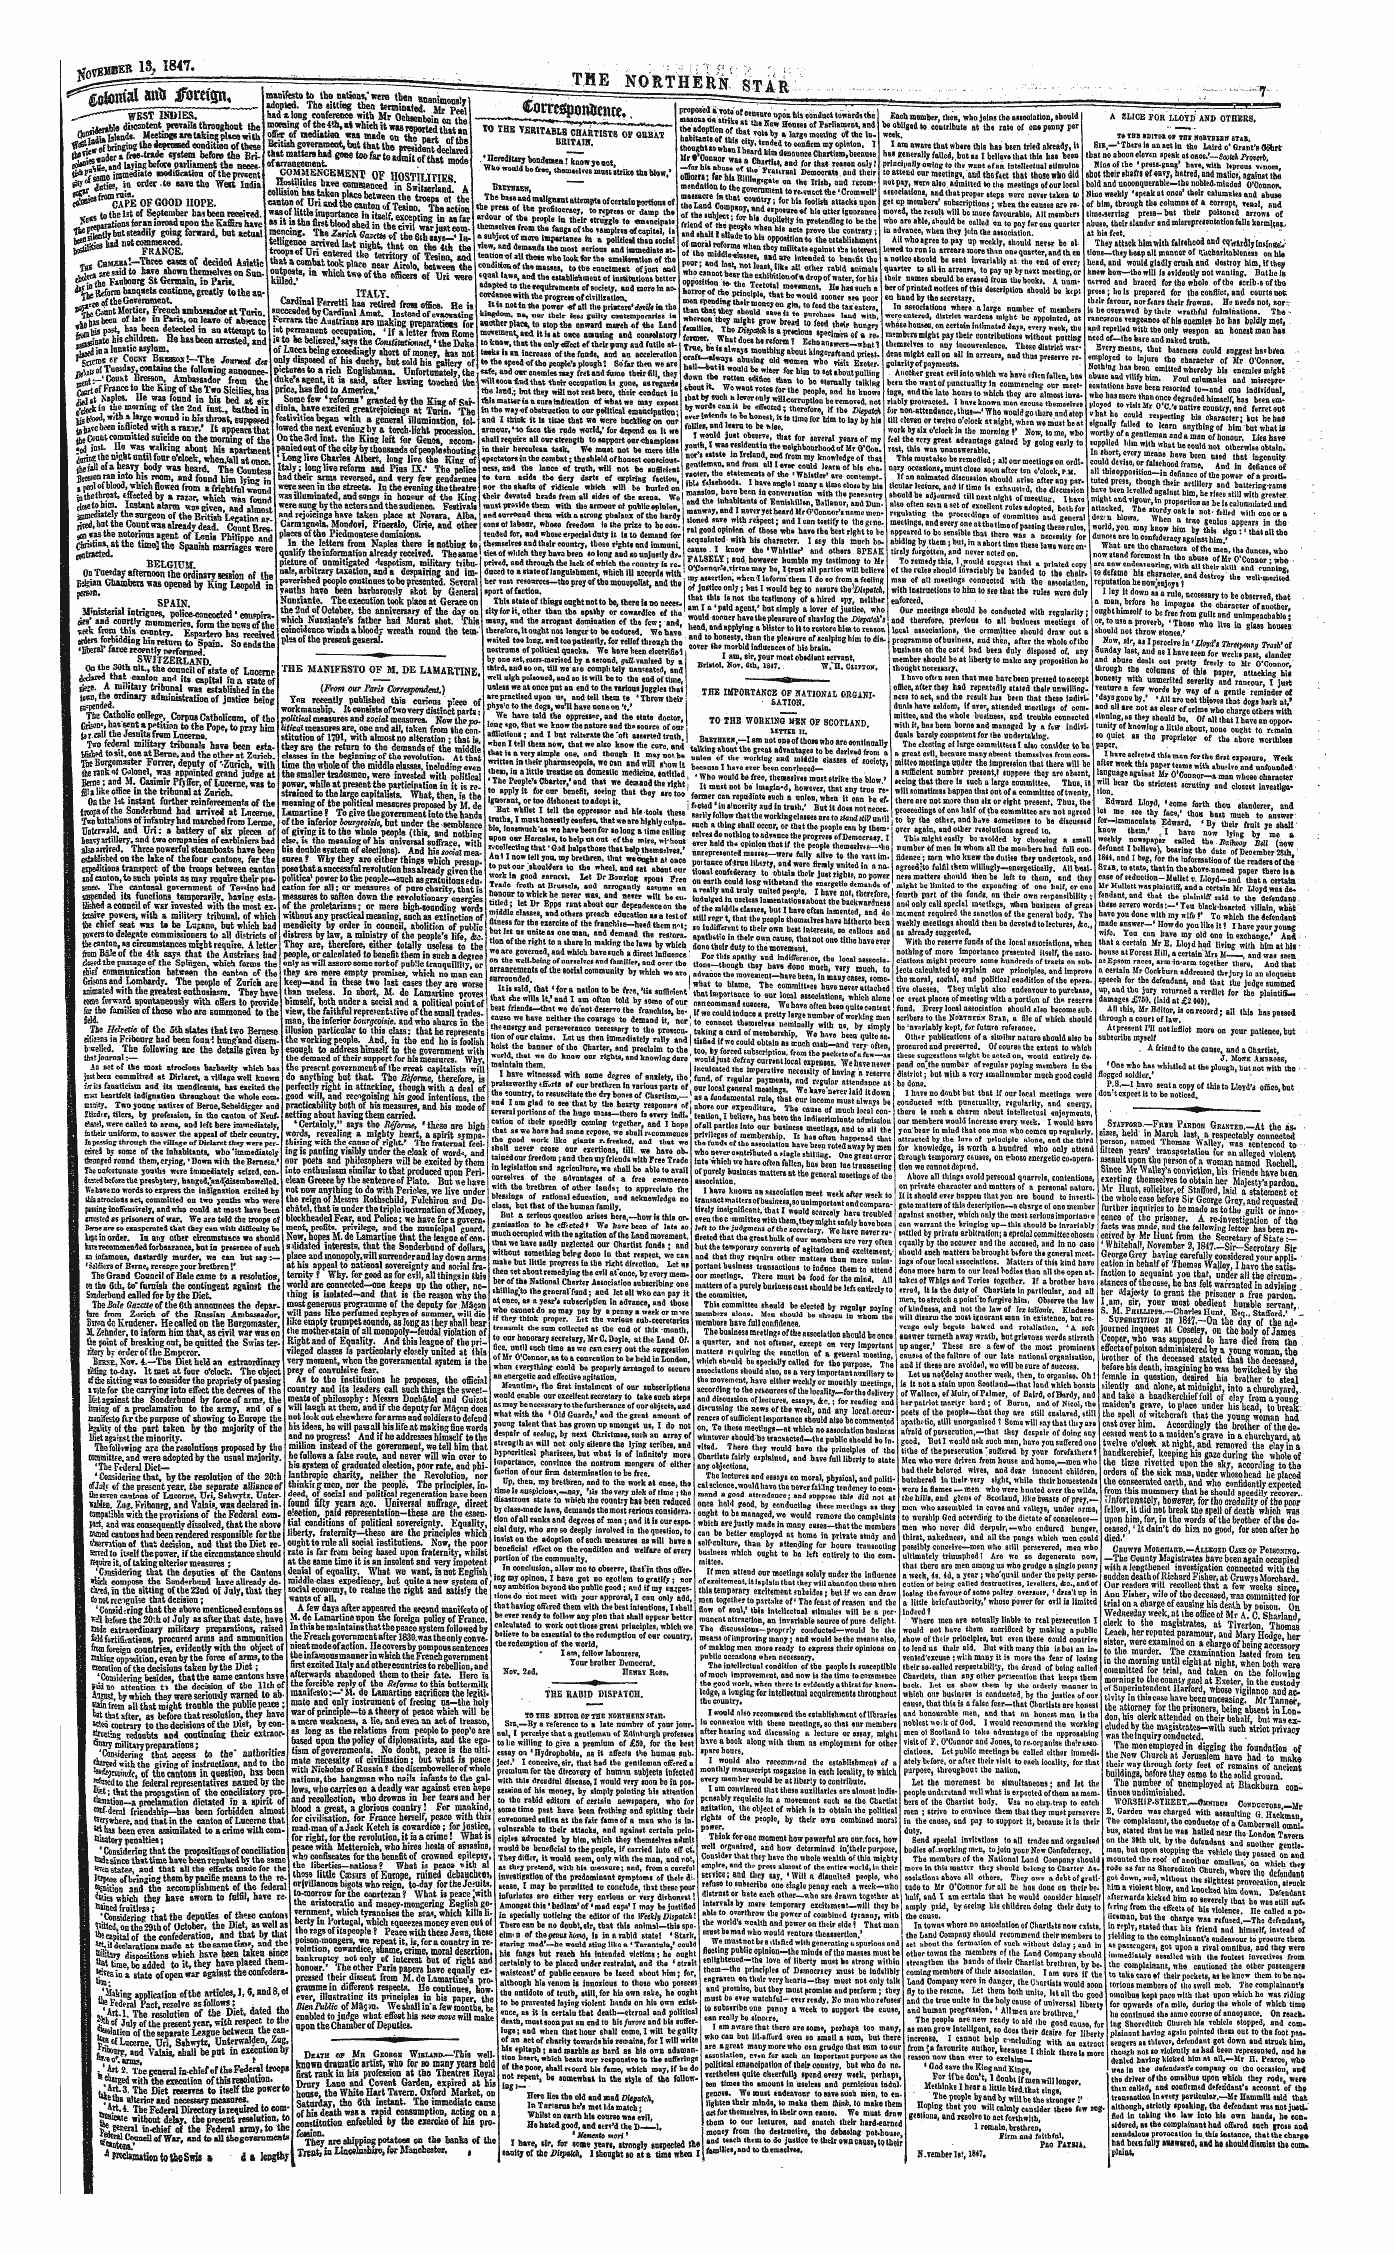 Northern Star (1837-1852): jS F Y, 1st edition - Rcu*-""— T^^ Mfamm* ^Foreign. *^- T „ R«Tntttsi Slffl Imrtlffn.